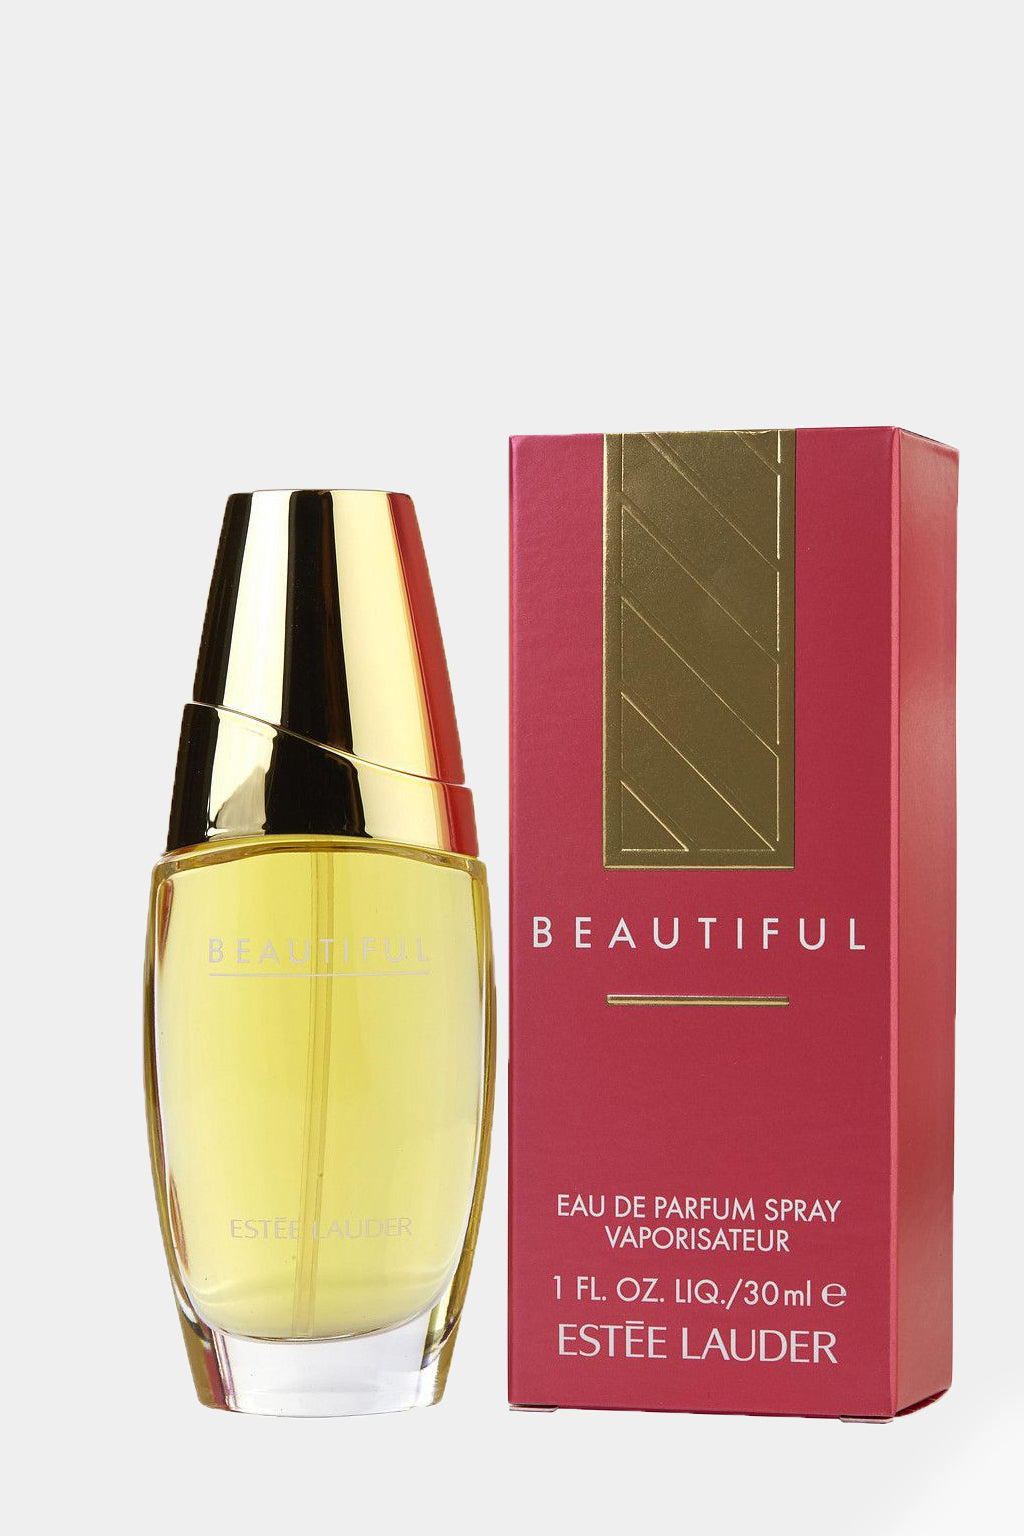 Estee Lauder - Beautiful Eau de Parfum